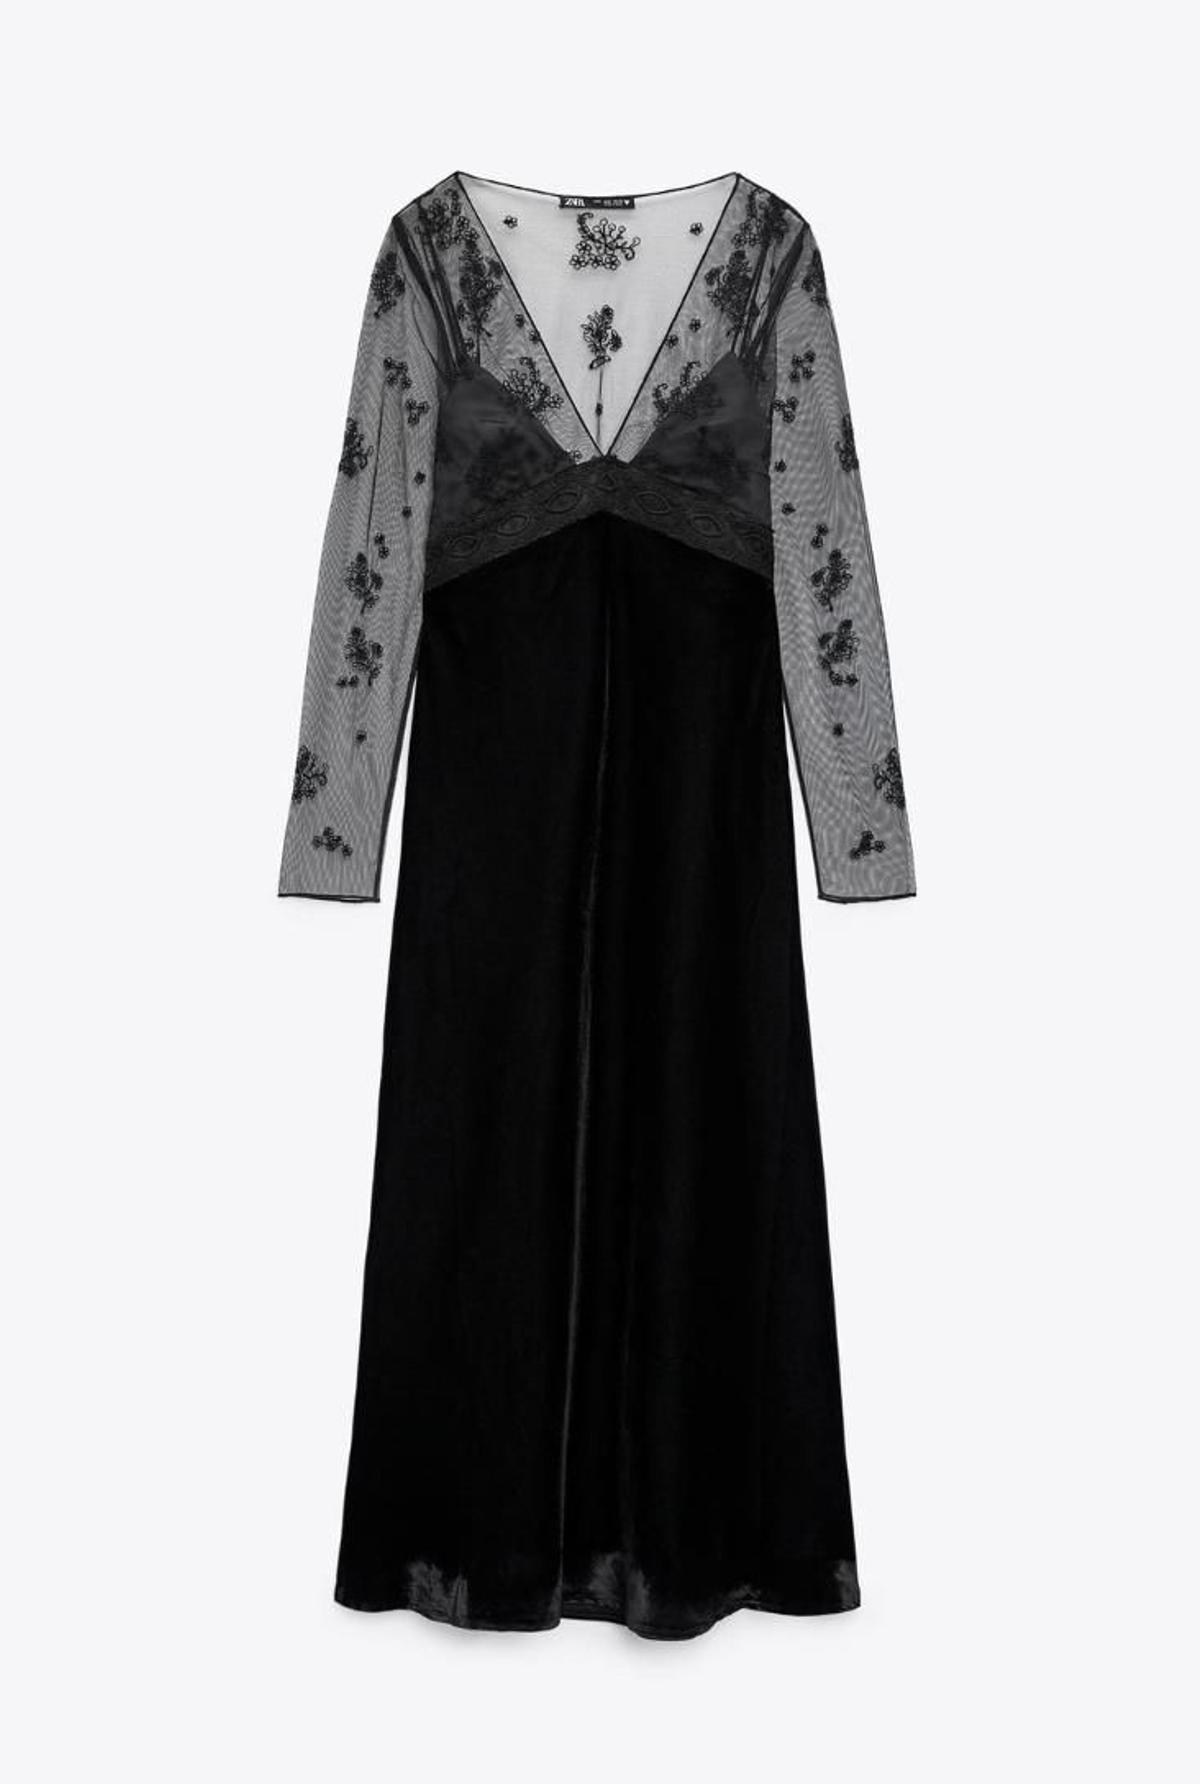 Vestido con mangas de tul bordadas en color negro, de Zara